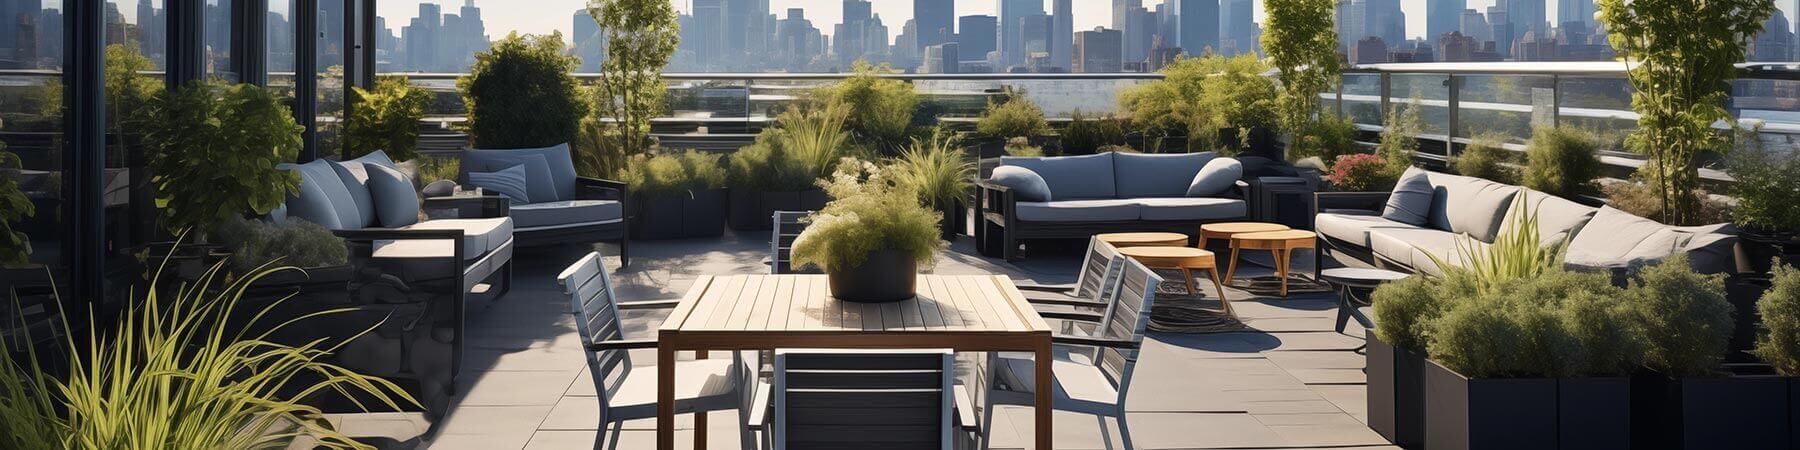 Aménagement de terrasse d'entreprise extérieure avec mobilier et végétation